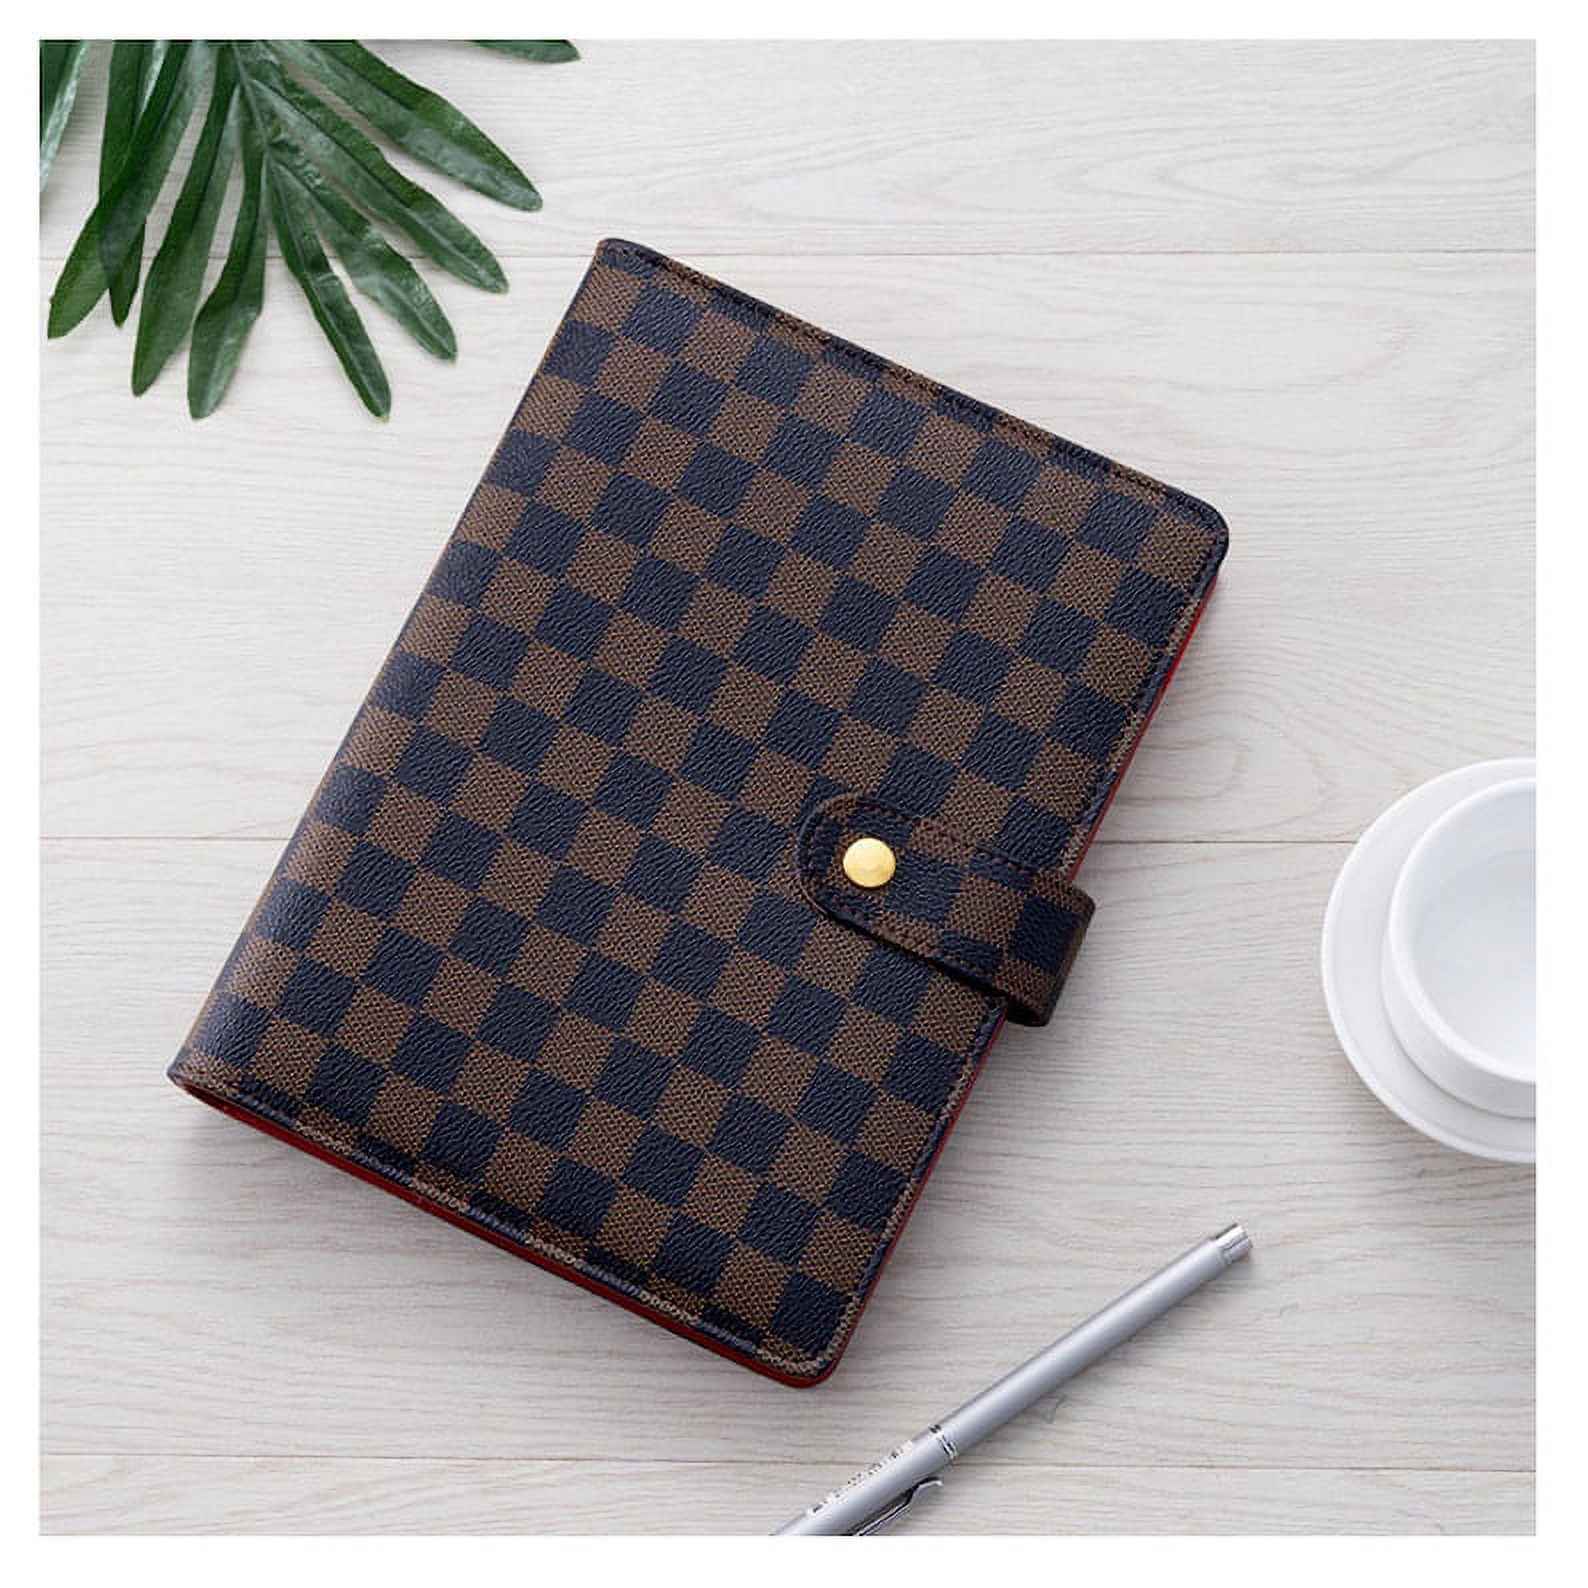 💗 Luxury Checkered Agenda Binder Planner Journal Notepad Gift A7